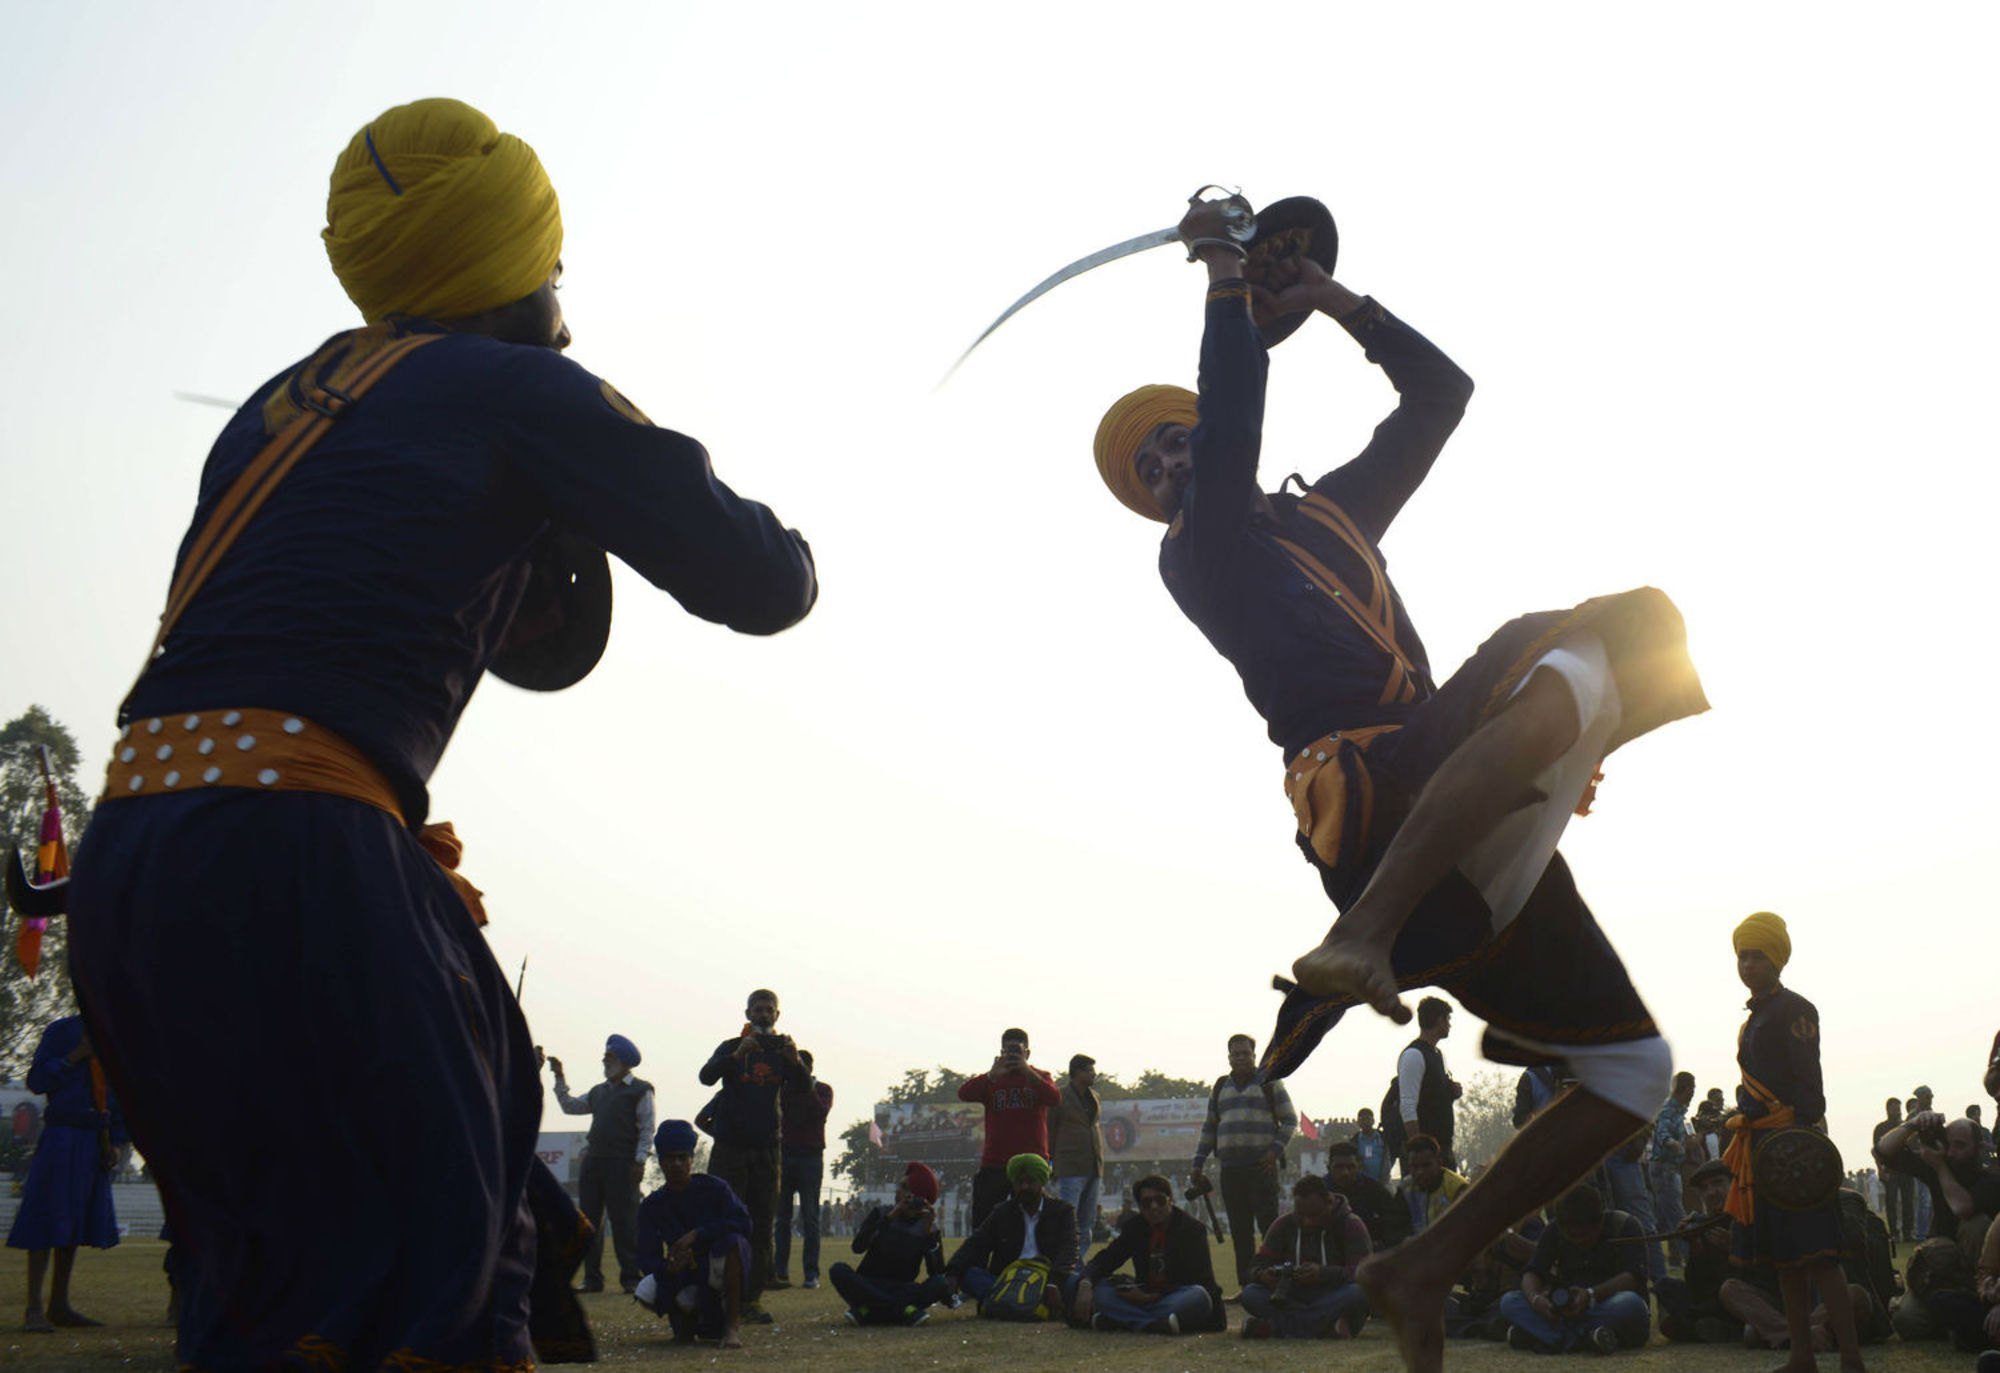 Aguentam um trator! Veja toda a maluquice dos Jogos Rurais da Índia - Fotos  - R7 Hora 7